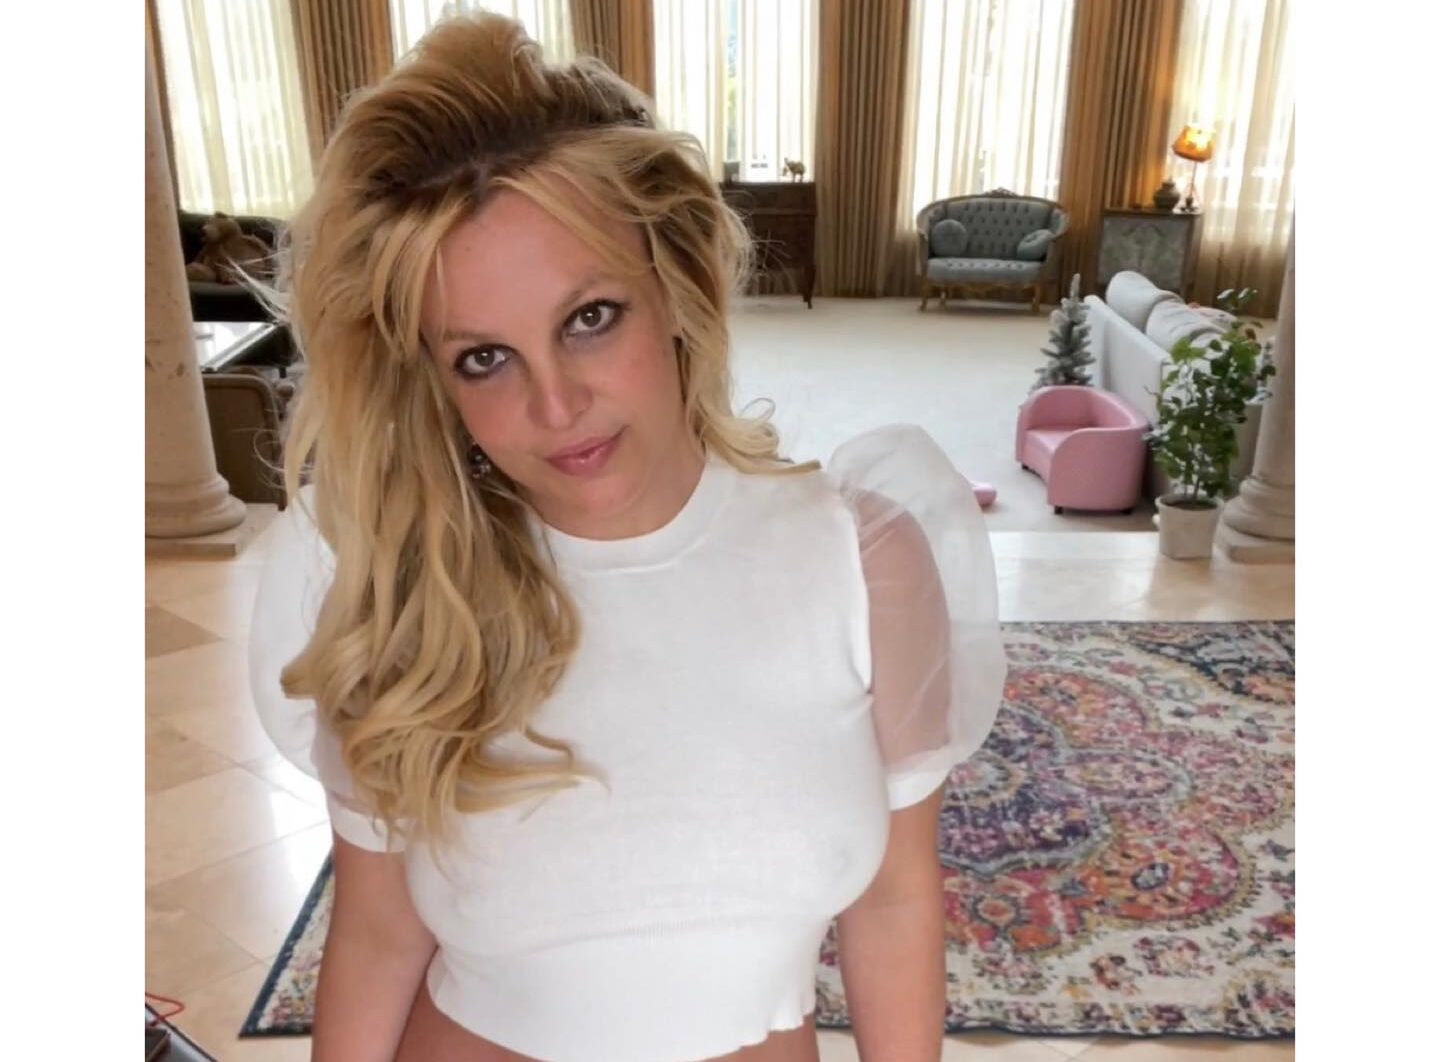 VIDEO: Guardia de seguridad de un jugador de la NBA agrede a Britney con terrible golpe